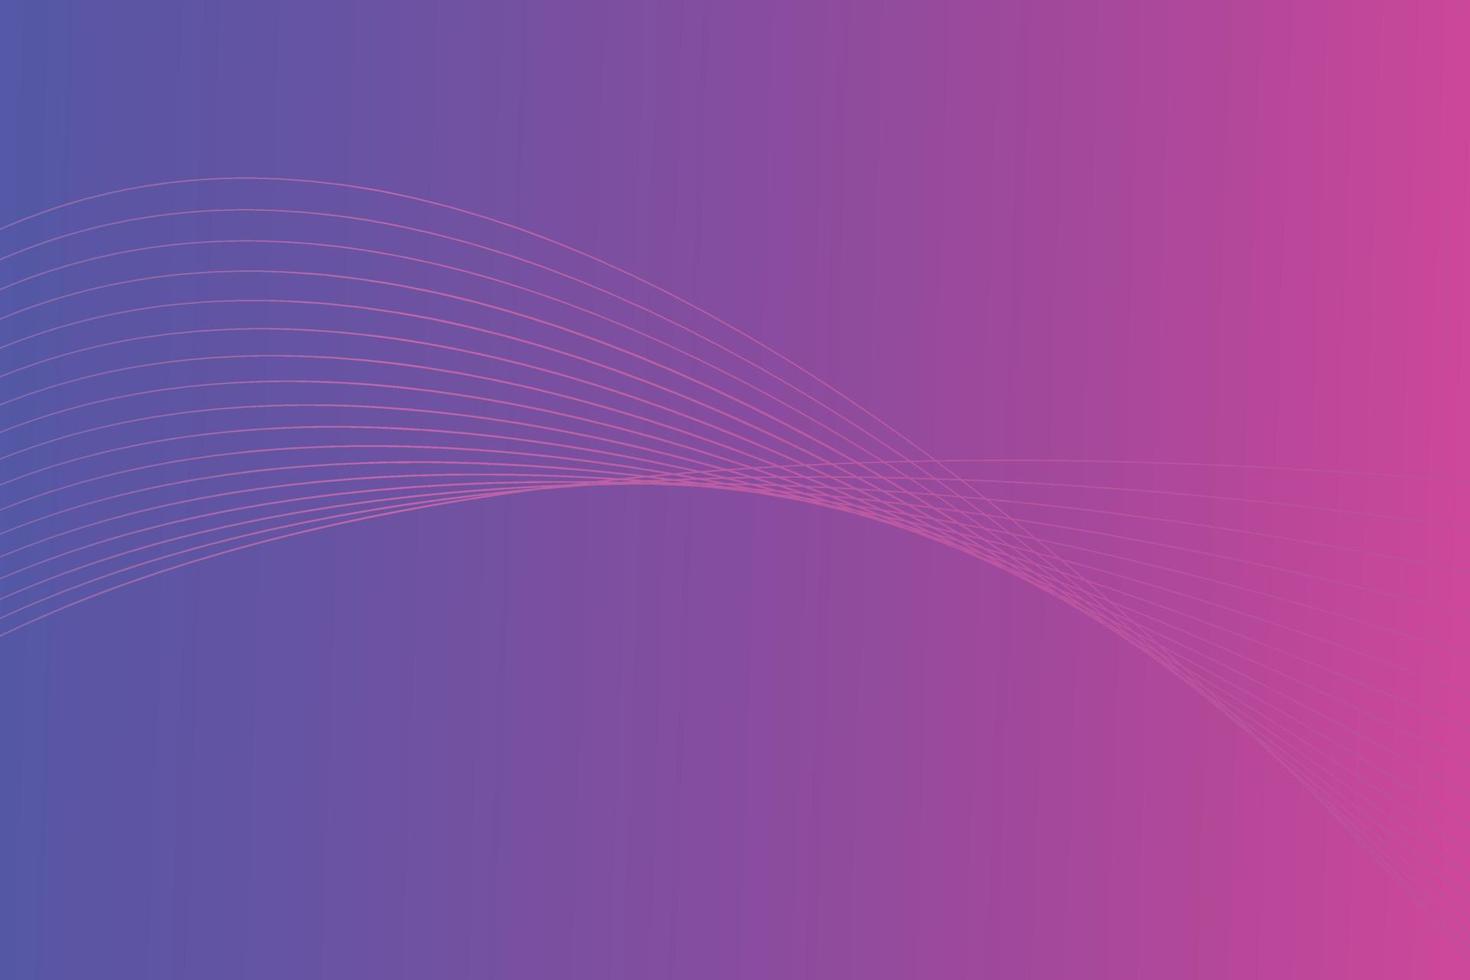 abstrakt linje Vinka linjär lutning bakgrund. modern färgrik vågig linje abstrakt bakgrund vektor